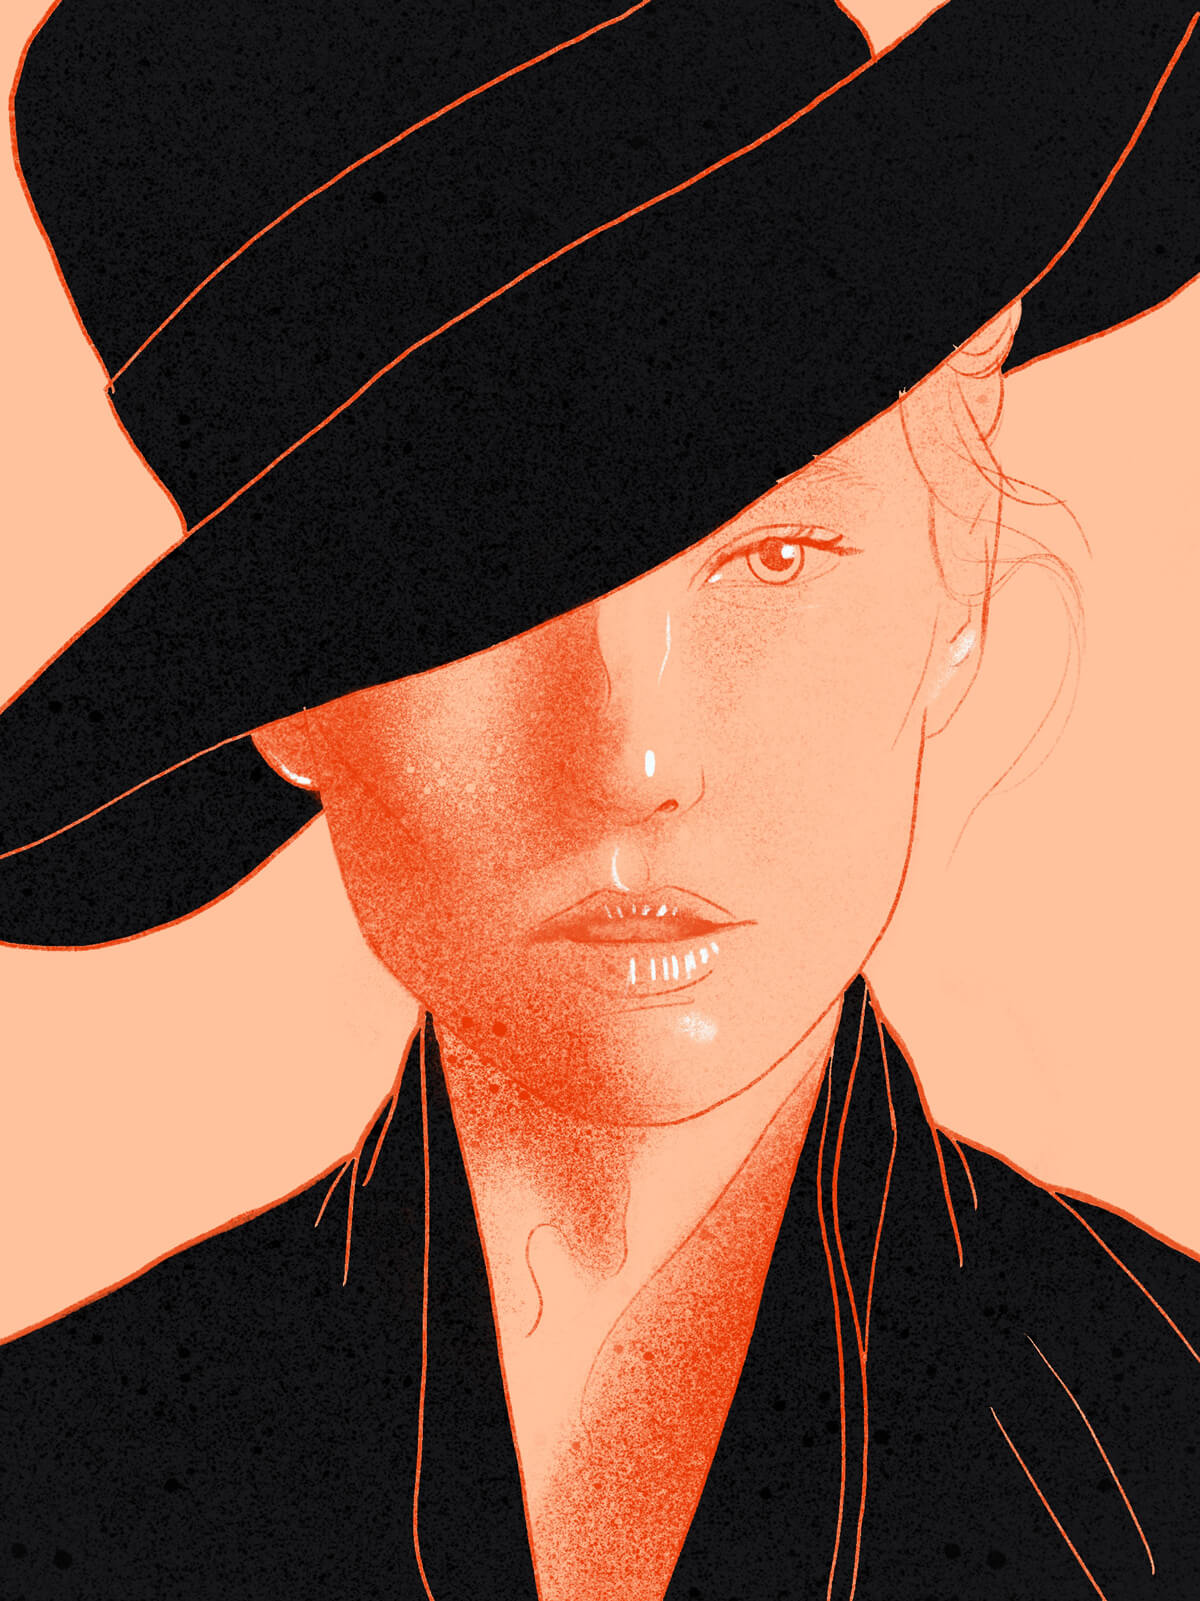 womain with black hat portrait